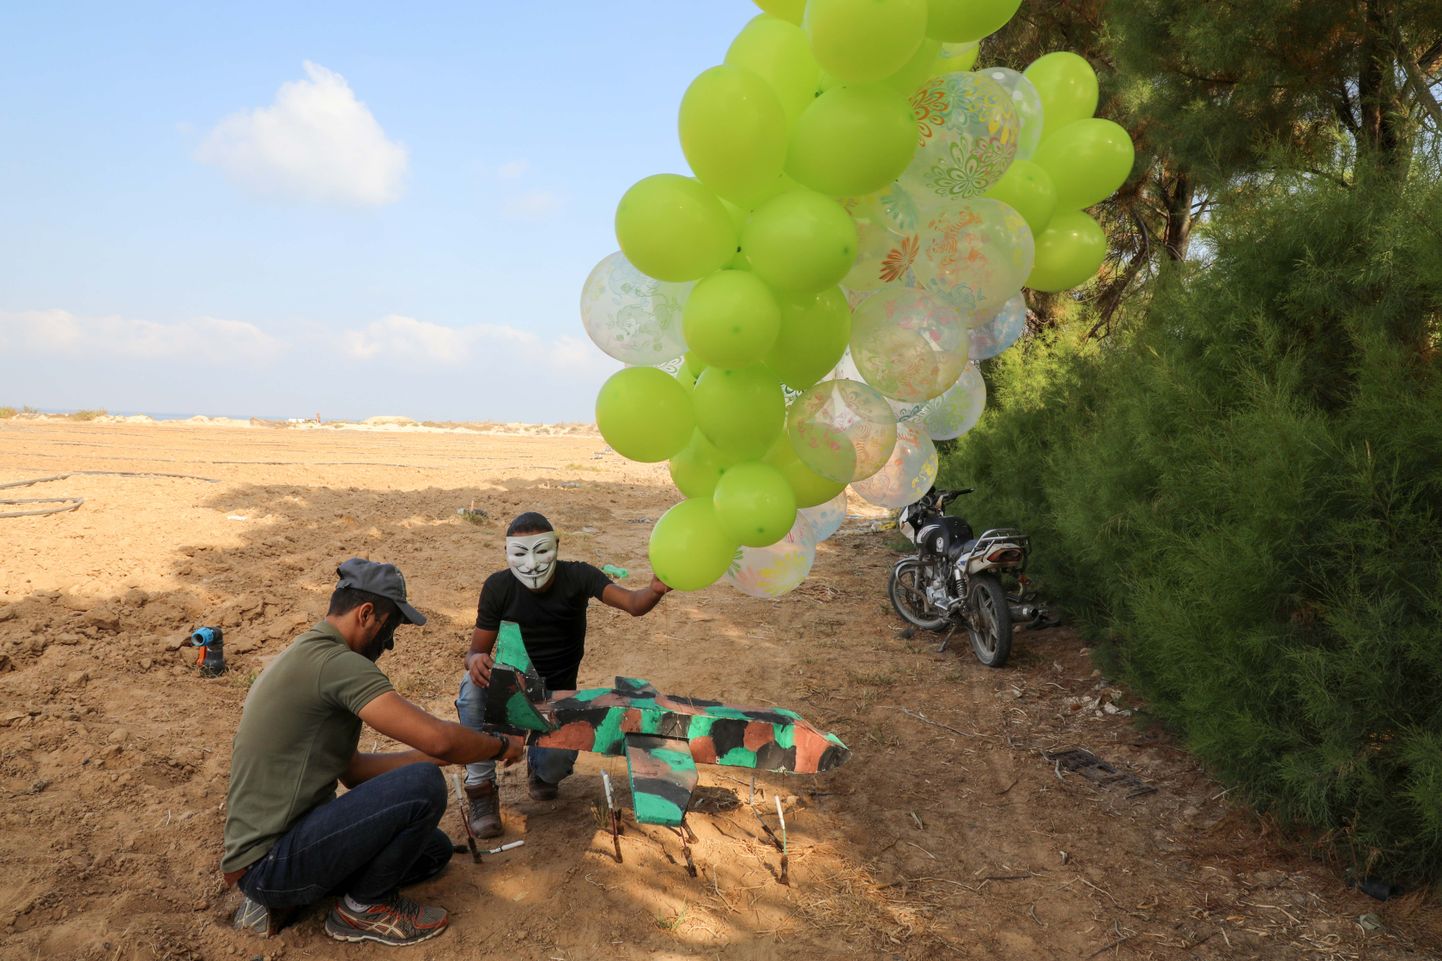 Pelastiinlased Gazas süüteõhupalle ette valmistamas.